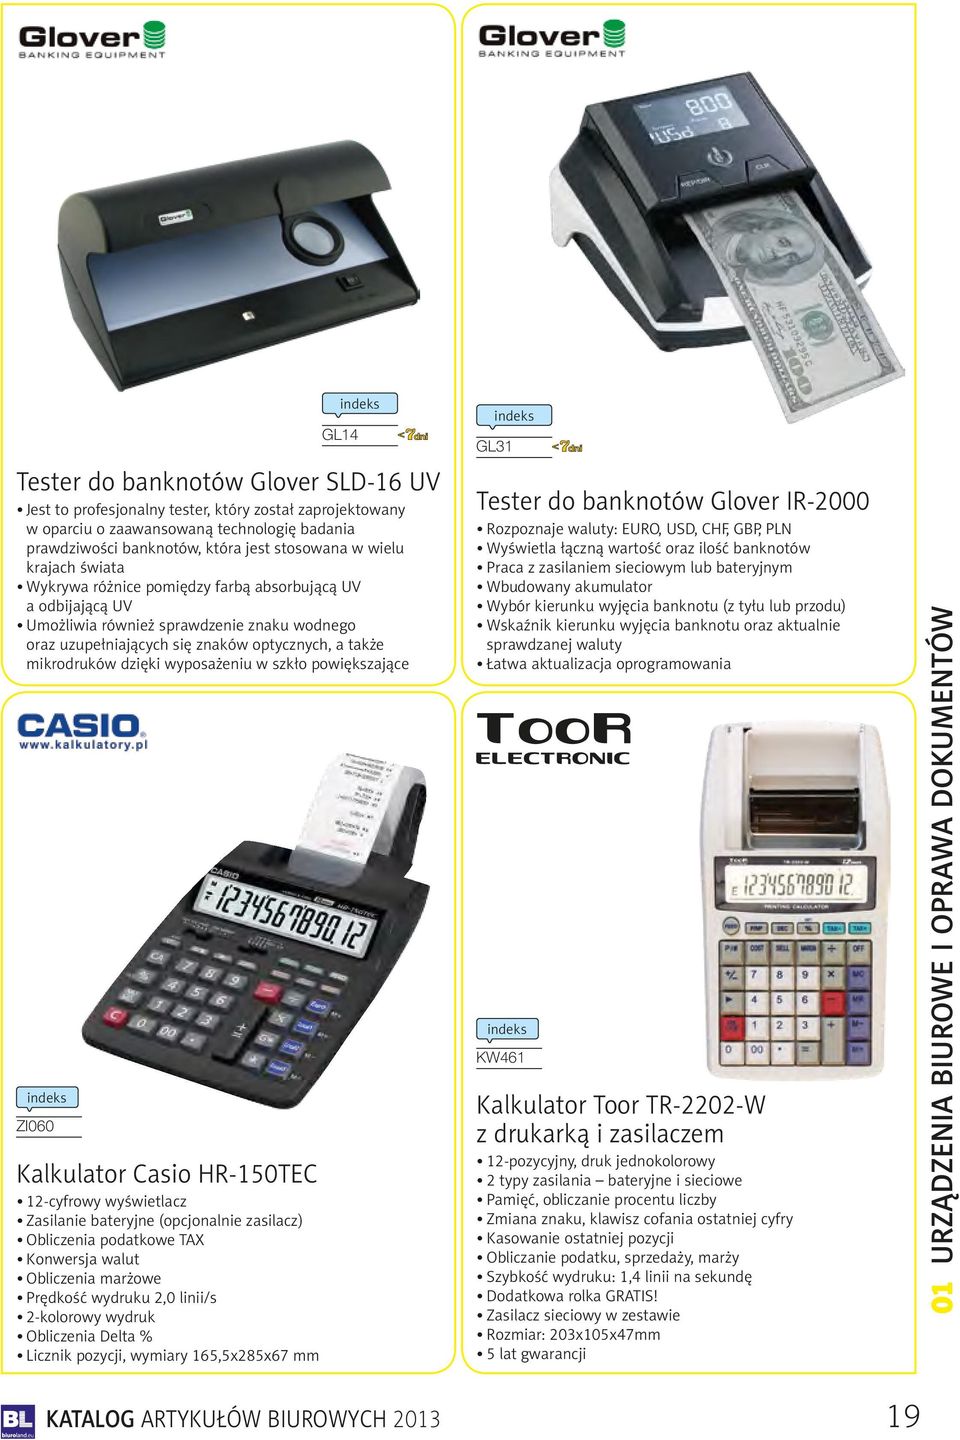 wyposażeniu w szkło powiększające ZI060 Kalkulator Casio HR-150TEC 12-cyfrowy wyświetlacz Zasilanie bateryjne (opcjonalnie zasilacz) Obliczenia podatkowe TAX Konwersja walut Obliczenia marżowe